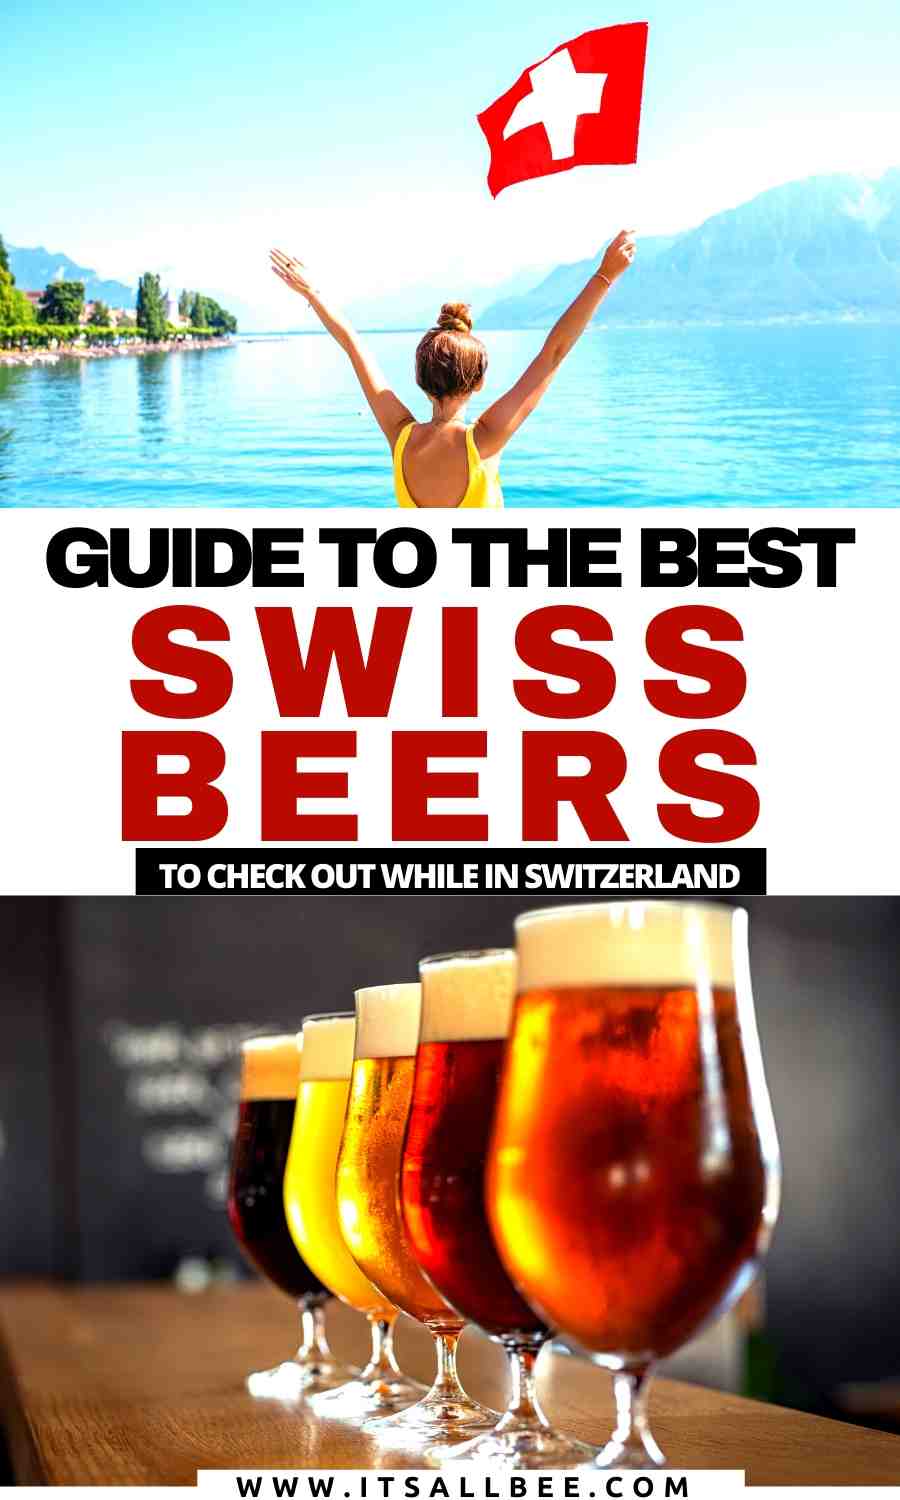 Swiss beers | Swiss beer brands | Swiss alcohol | Swiss breweries | best Swiss beers | best beer in switzerland | Switzerland beer brands 